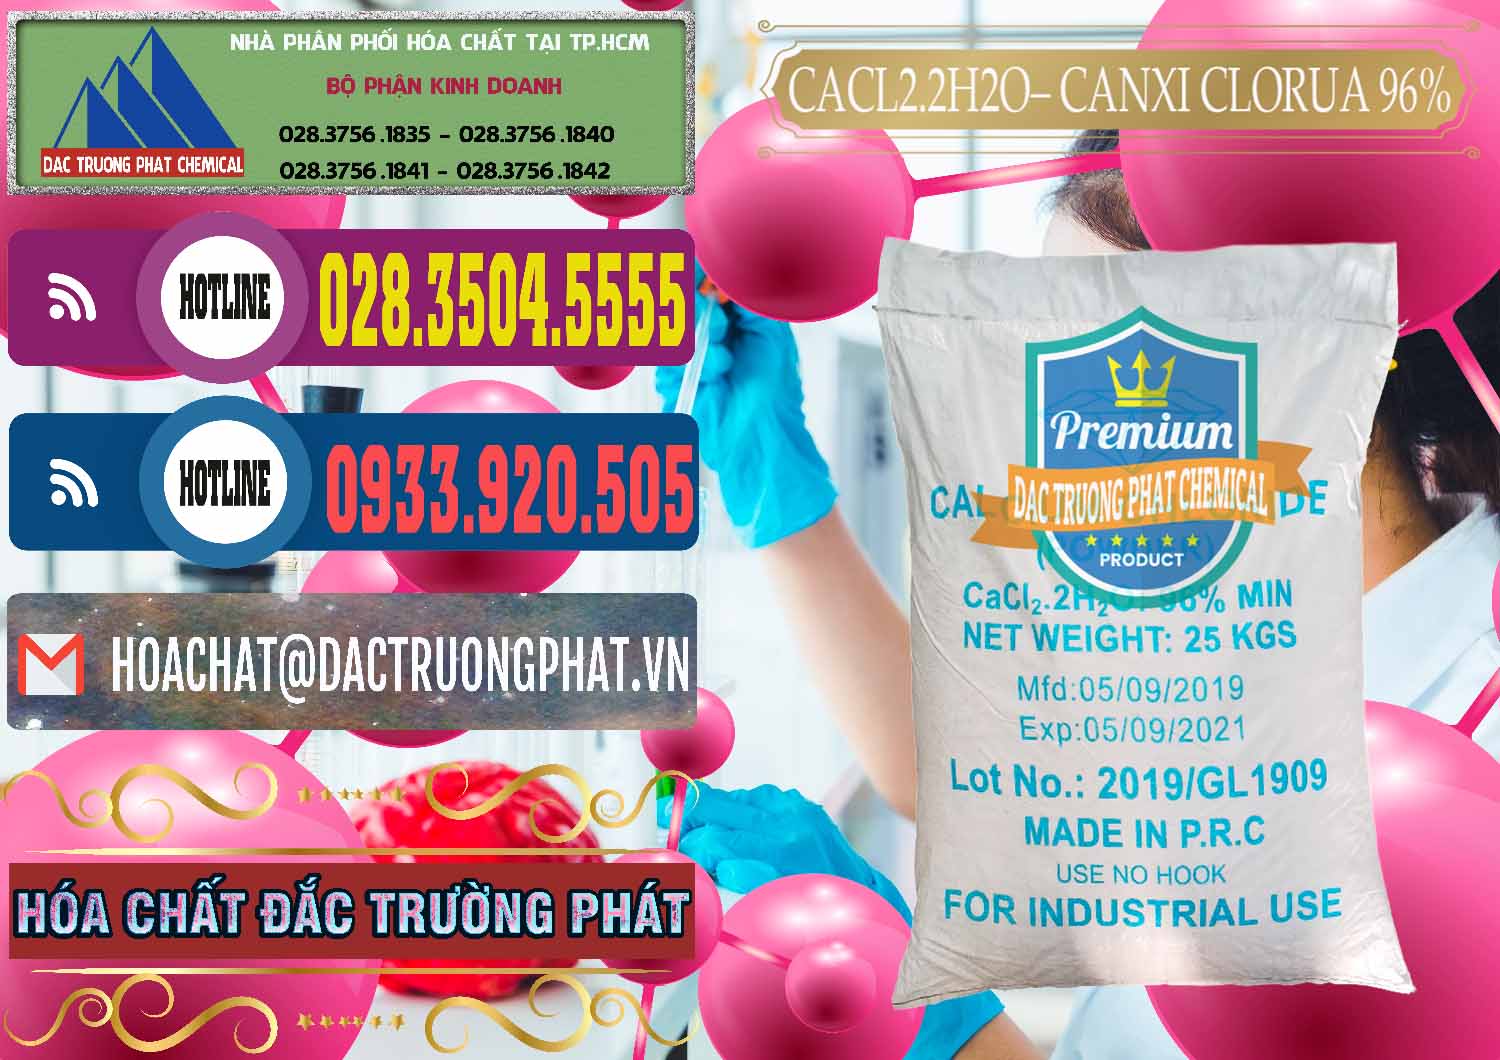 Nơi bán _ phân phối CaCl2 – Canxi Clorua 96% Logo Kim Cương Trung Quốc China - 0040 - Đơn vị cung cấp & phân phối hóa chất tại TP.HCM - muabanhoachat.com.vn